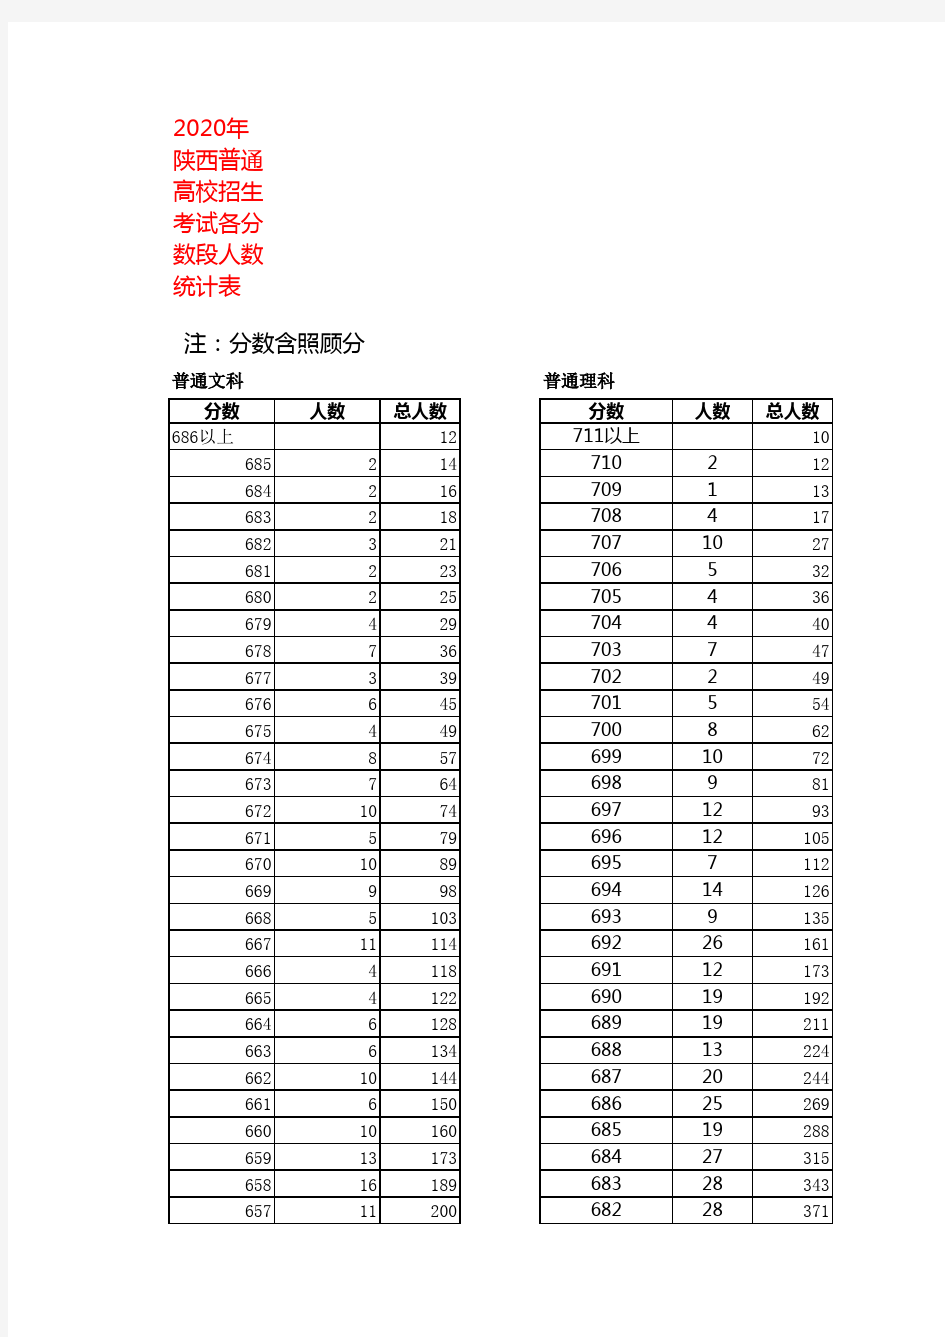 2020年陕西普通高校招生考试各分数段人数统计表